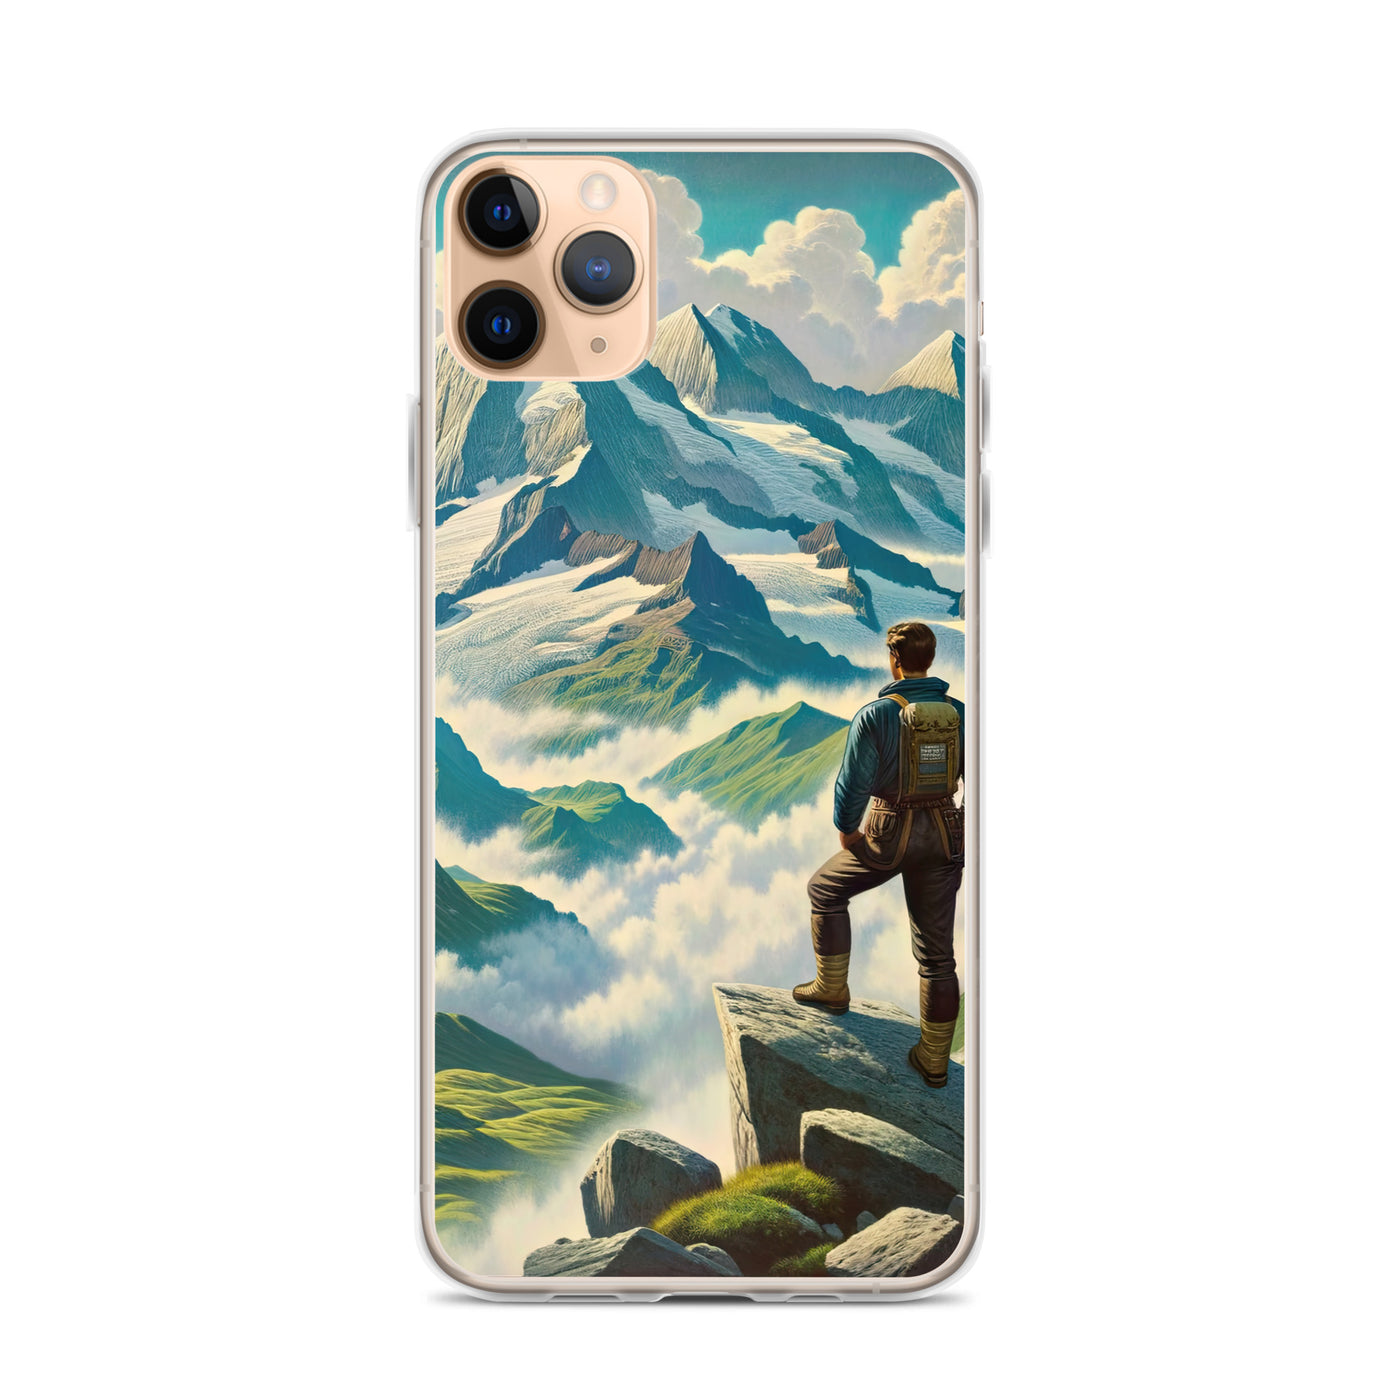 Panoramablick der Alpen mit Wanderer auf einem Hügel und schroffen Gipfeln - iPhone Schutzhülle (durchsichtig) wandern xxx yyy zzz iPhone 11 Pro Max